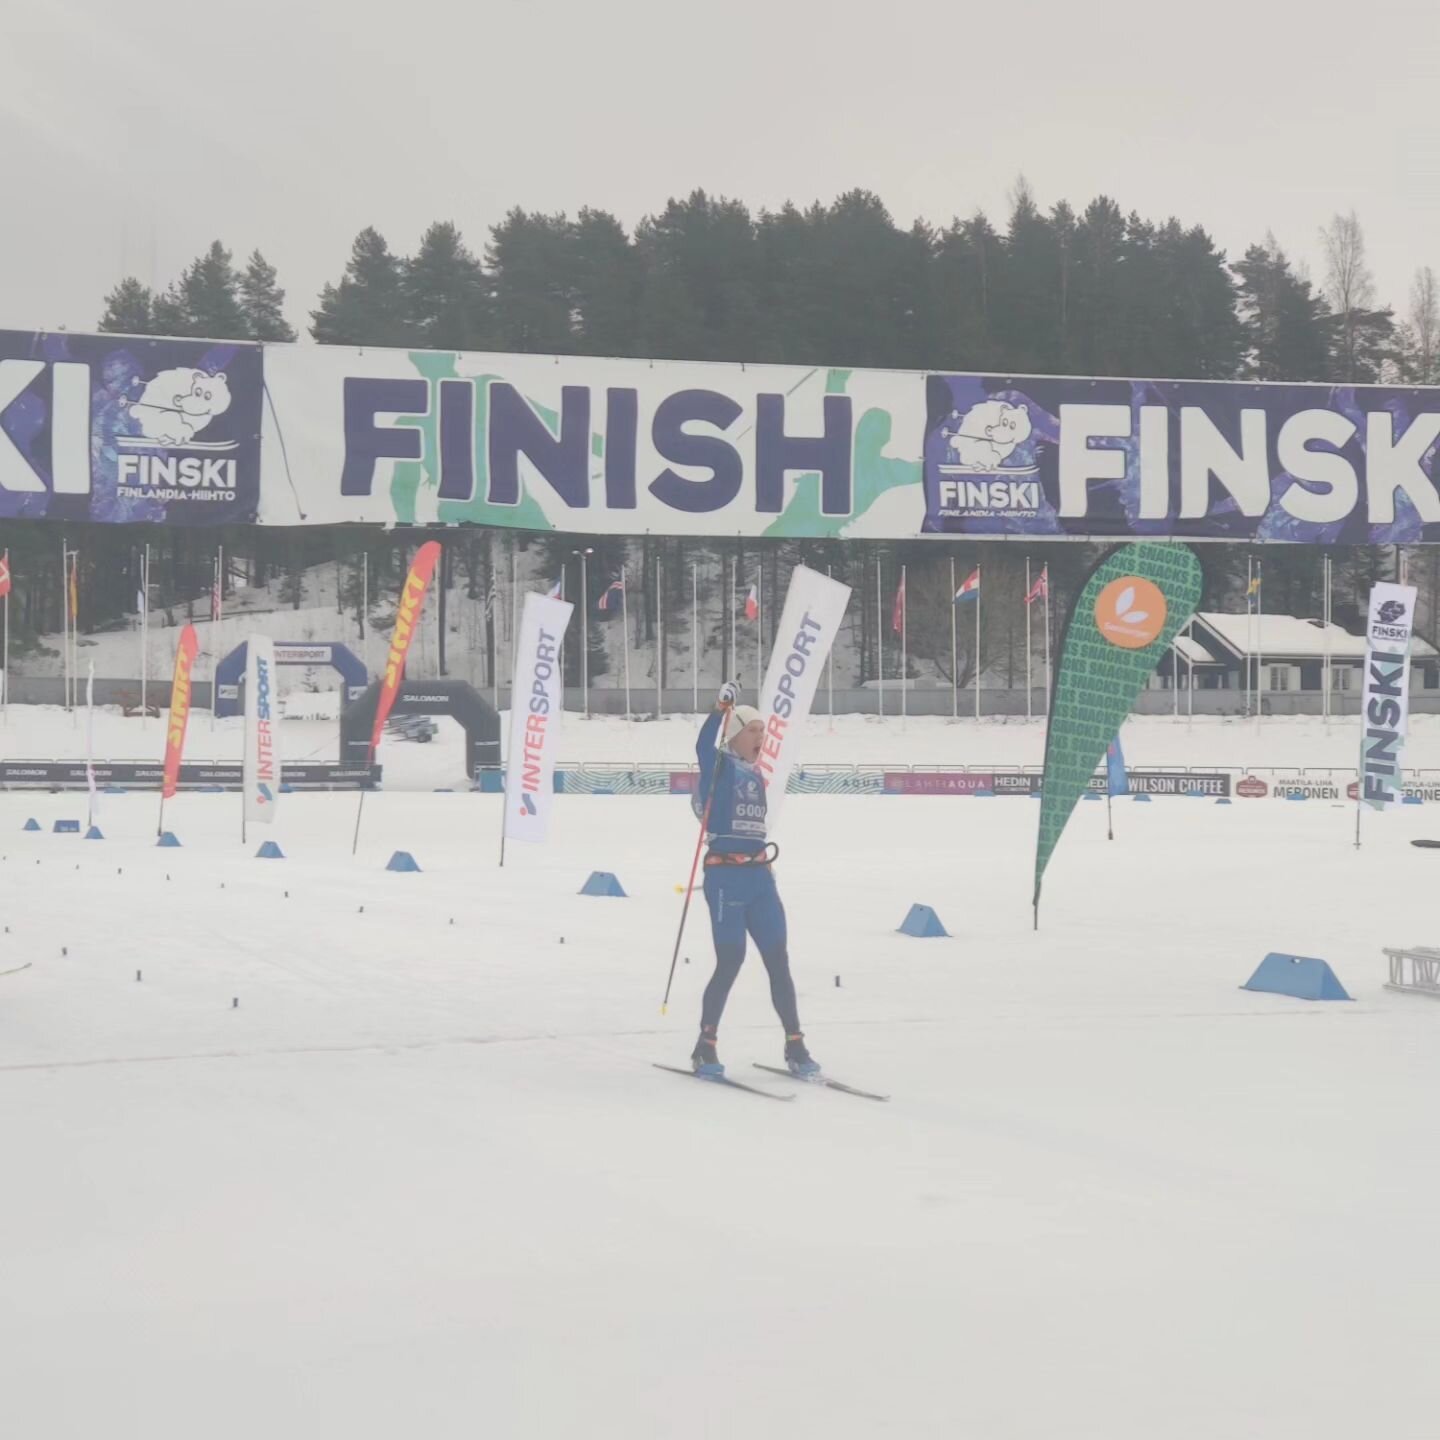 Verneri Suhonen voittaa 62 kilometrin vapaan hiihtotavan kilpailun! Anssi Koirikivi on toinen upean loppukiritaiston j&auml;lkeen, ja Topi Huttunen onnistuu lopussa nostamaan itsens&auml; kolmannelle sijalle. Onnittelut!

#finski #finlandiahiihto